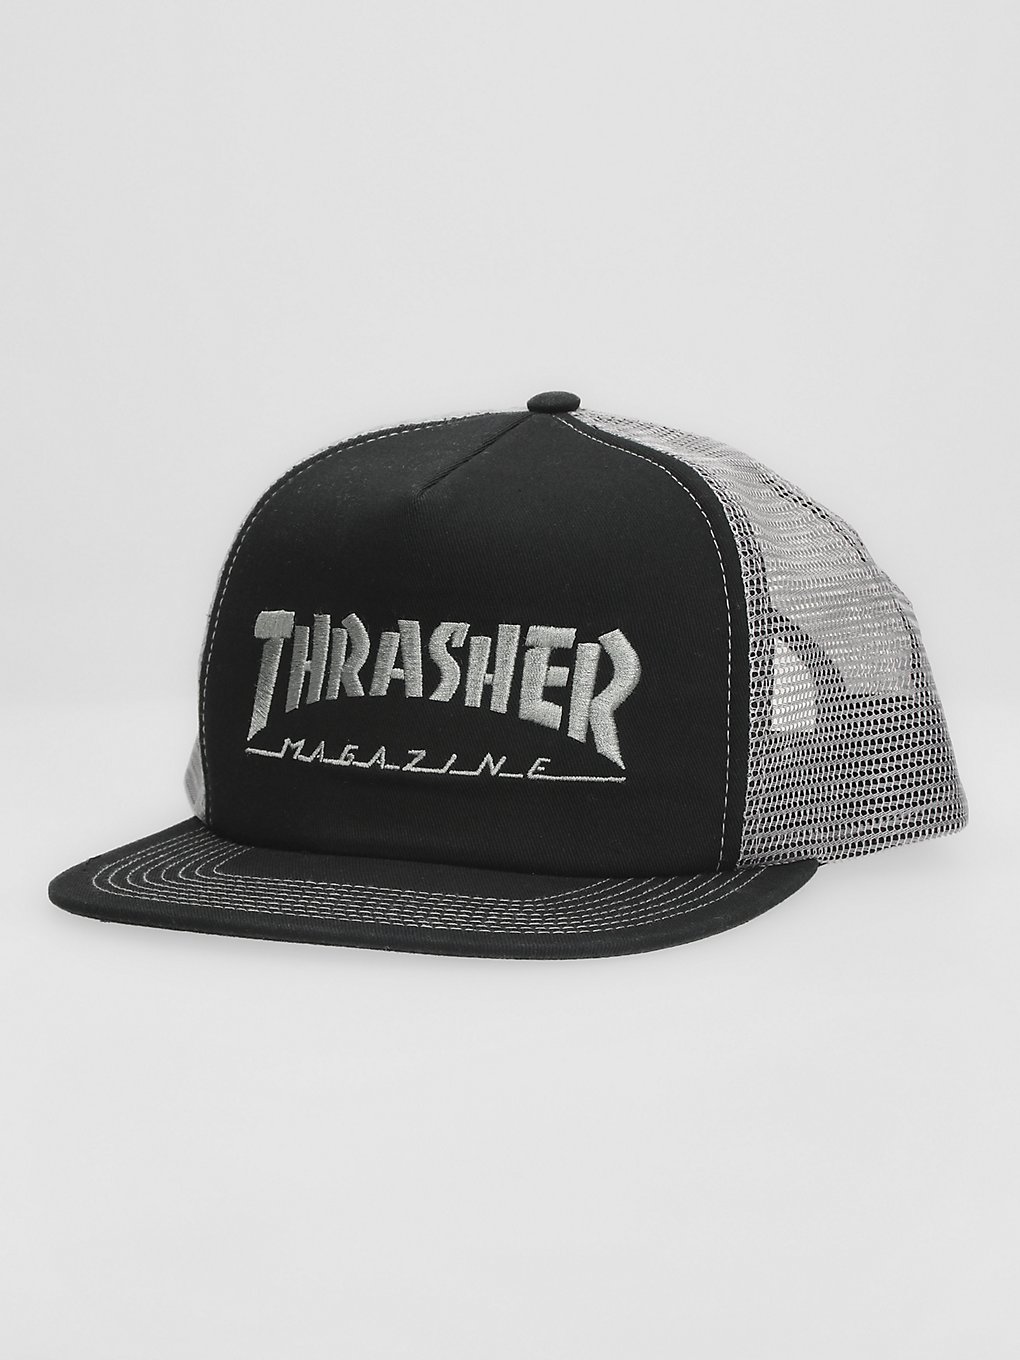 Thrasher Logo Embroidedred Mesh Cap grey kaufen